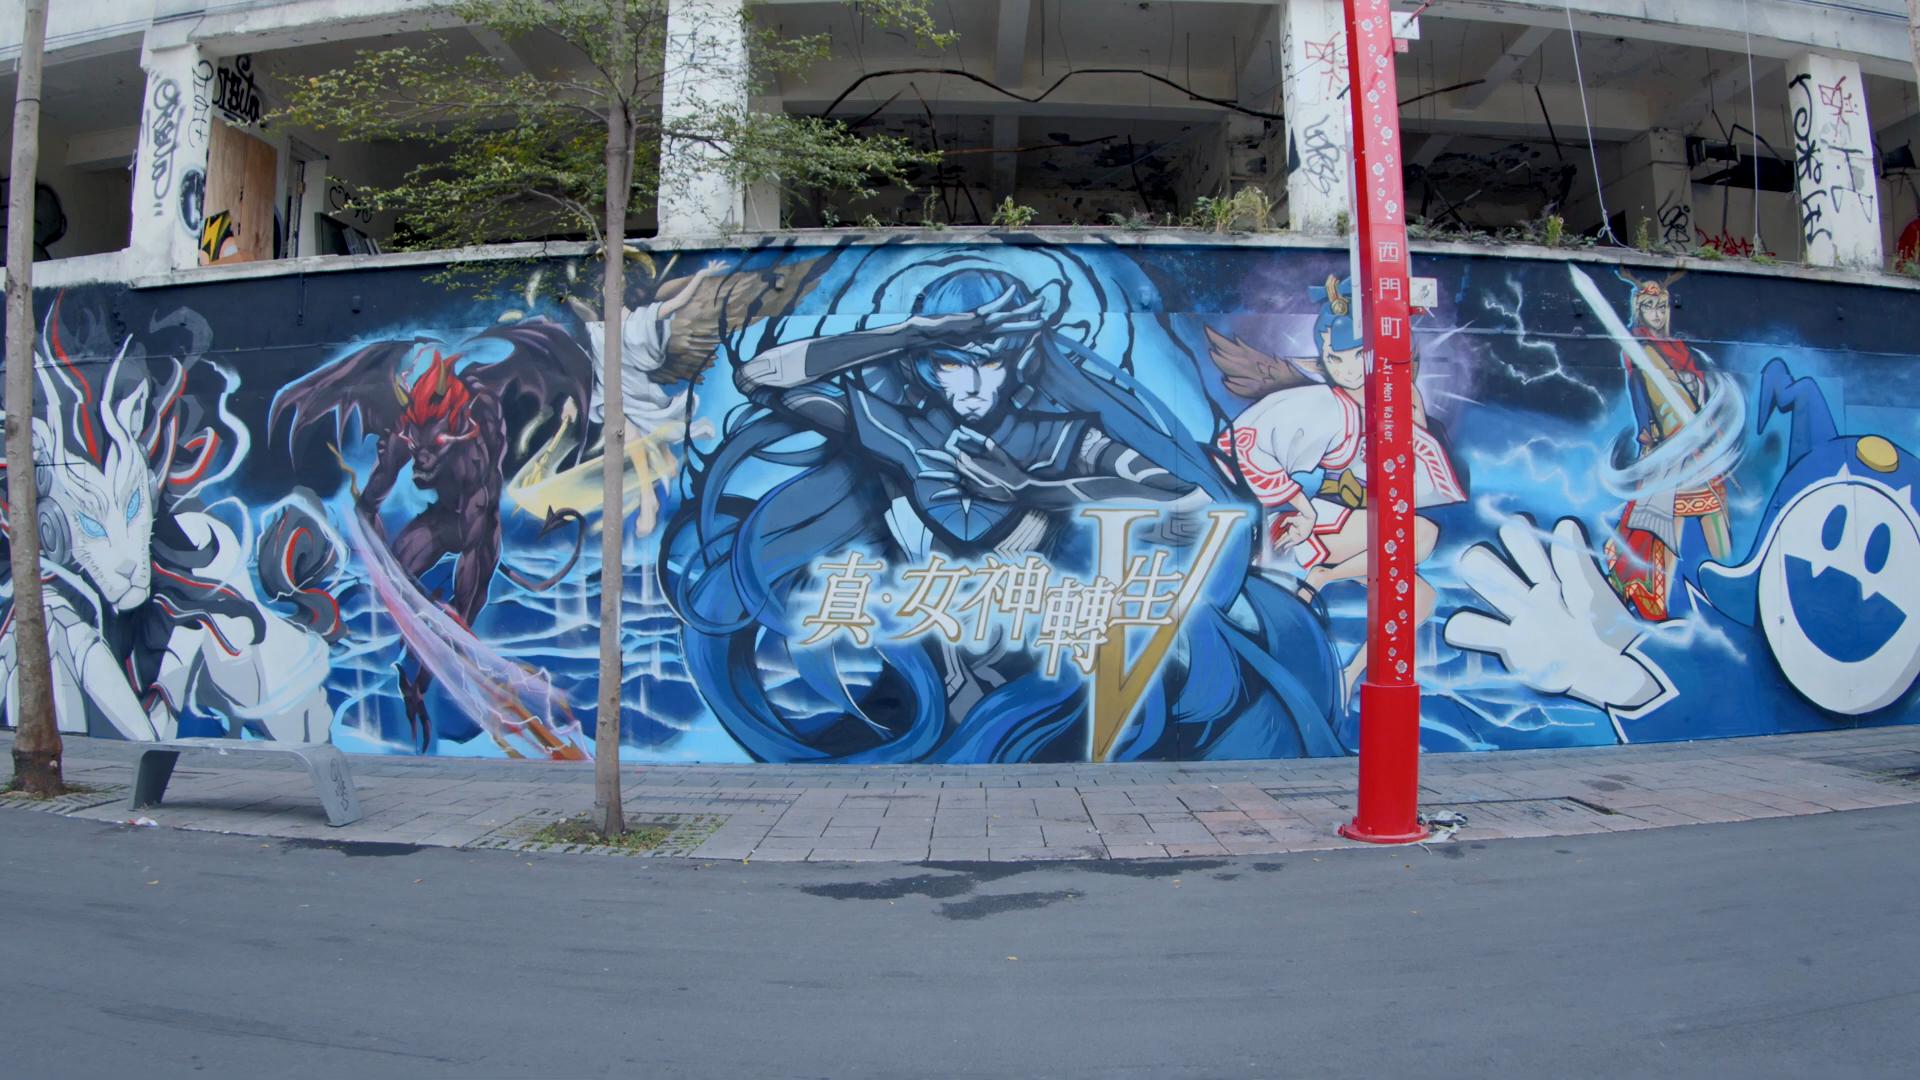 纪念《真女神转生5》发售 世嘉在街头绘制喷漆墙面